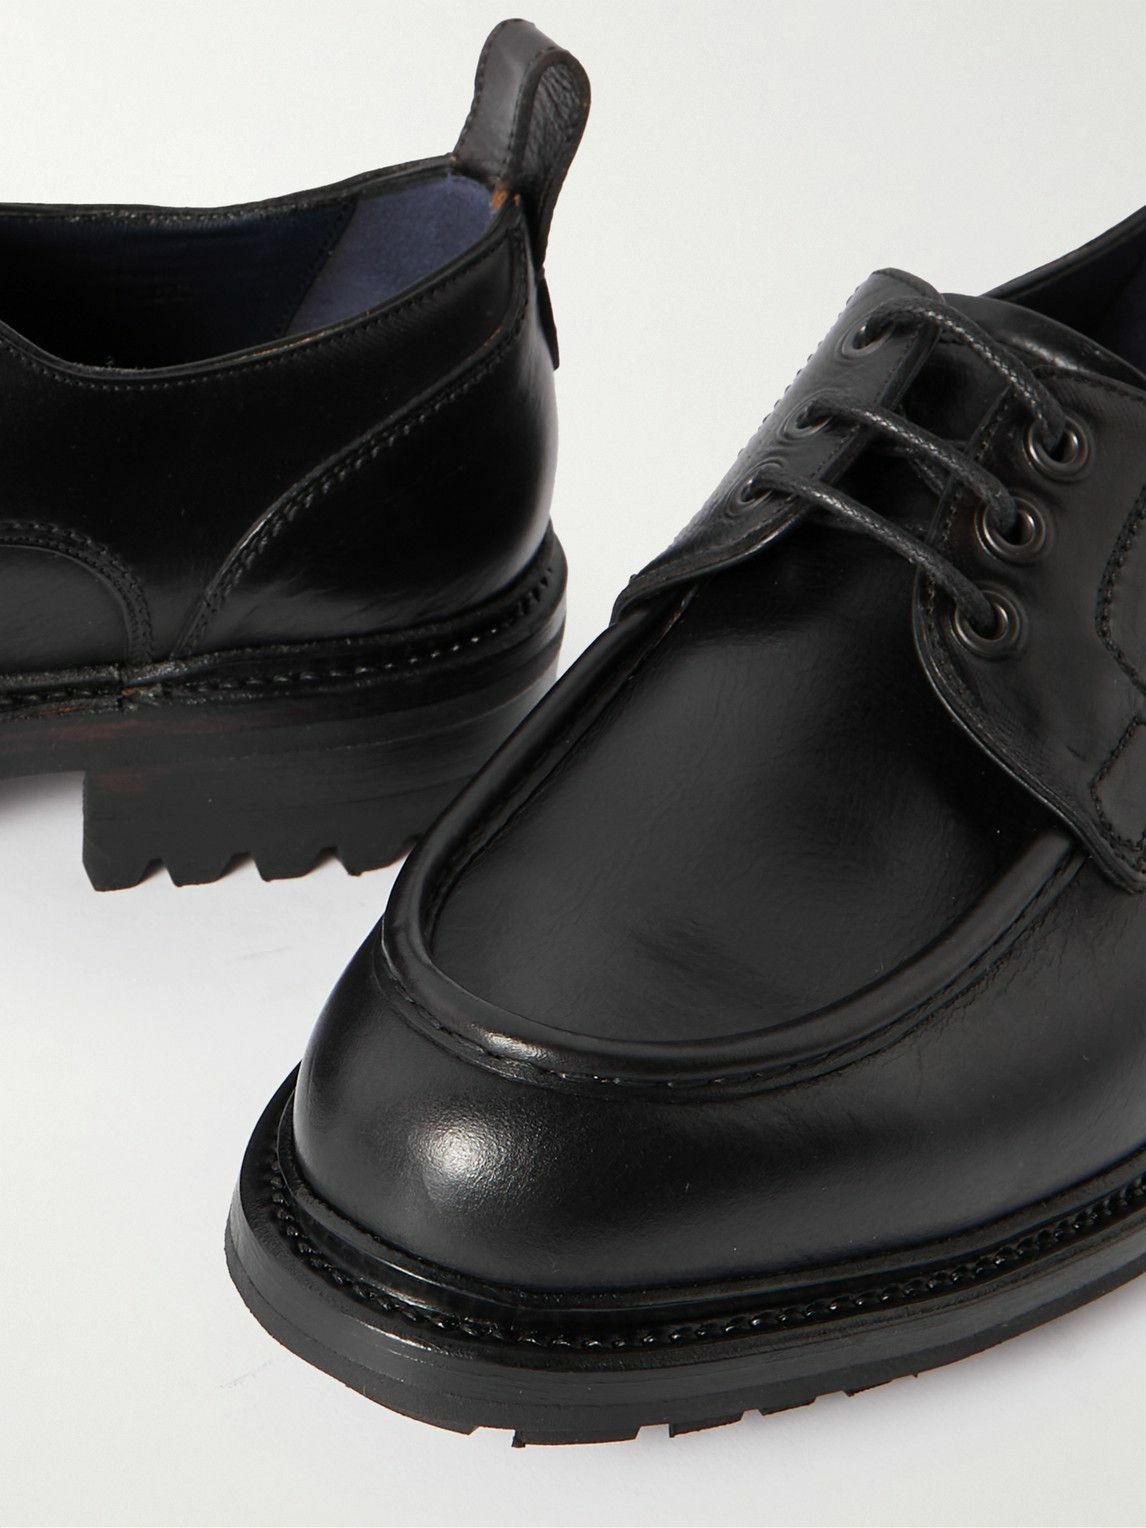 Brioni - Leather Derby Shoes - Black Brioni